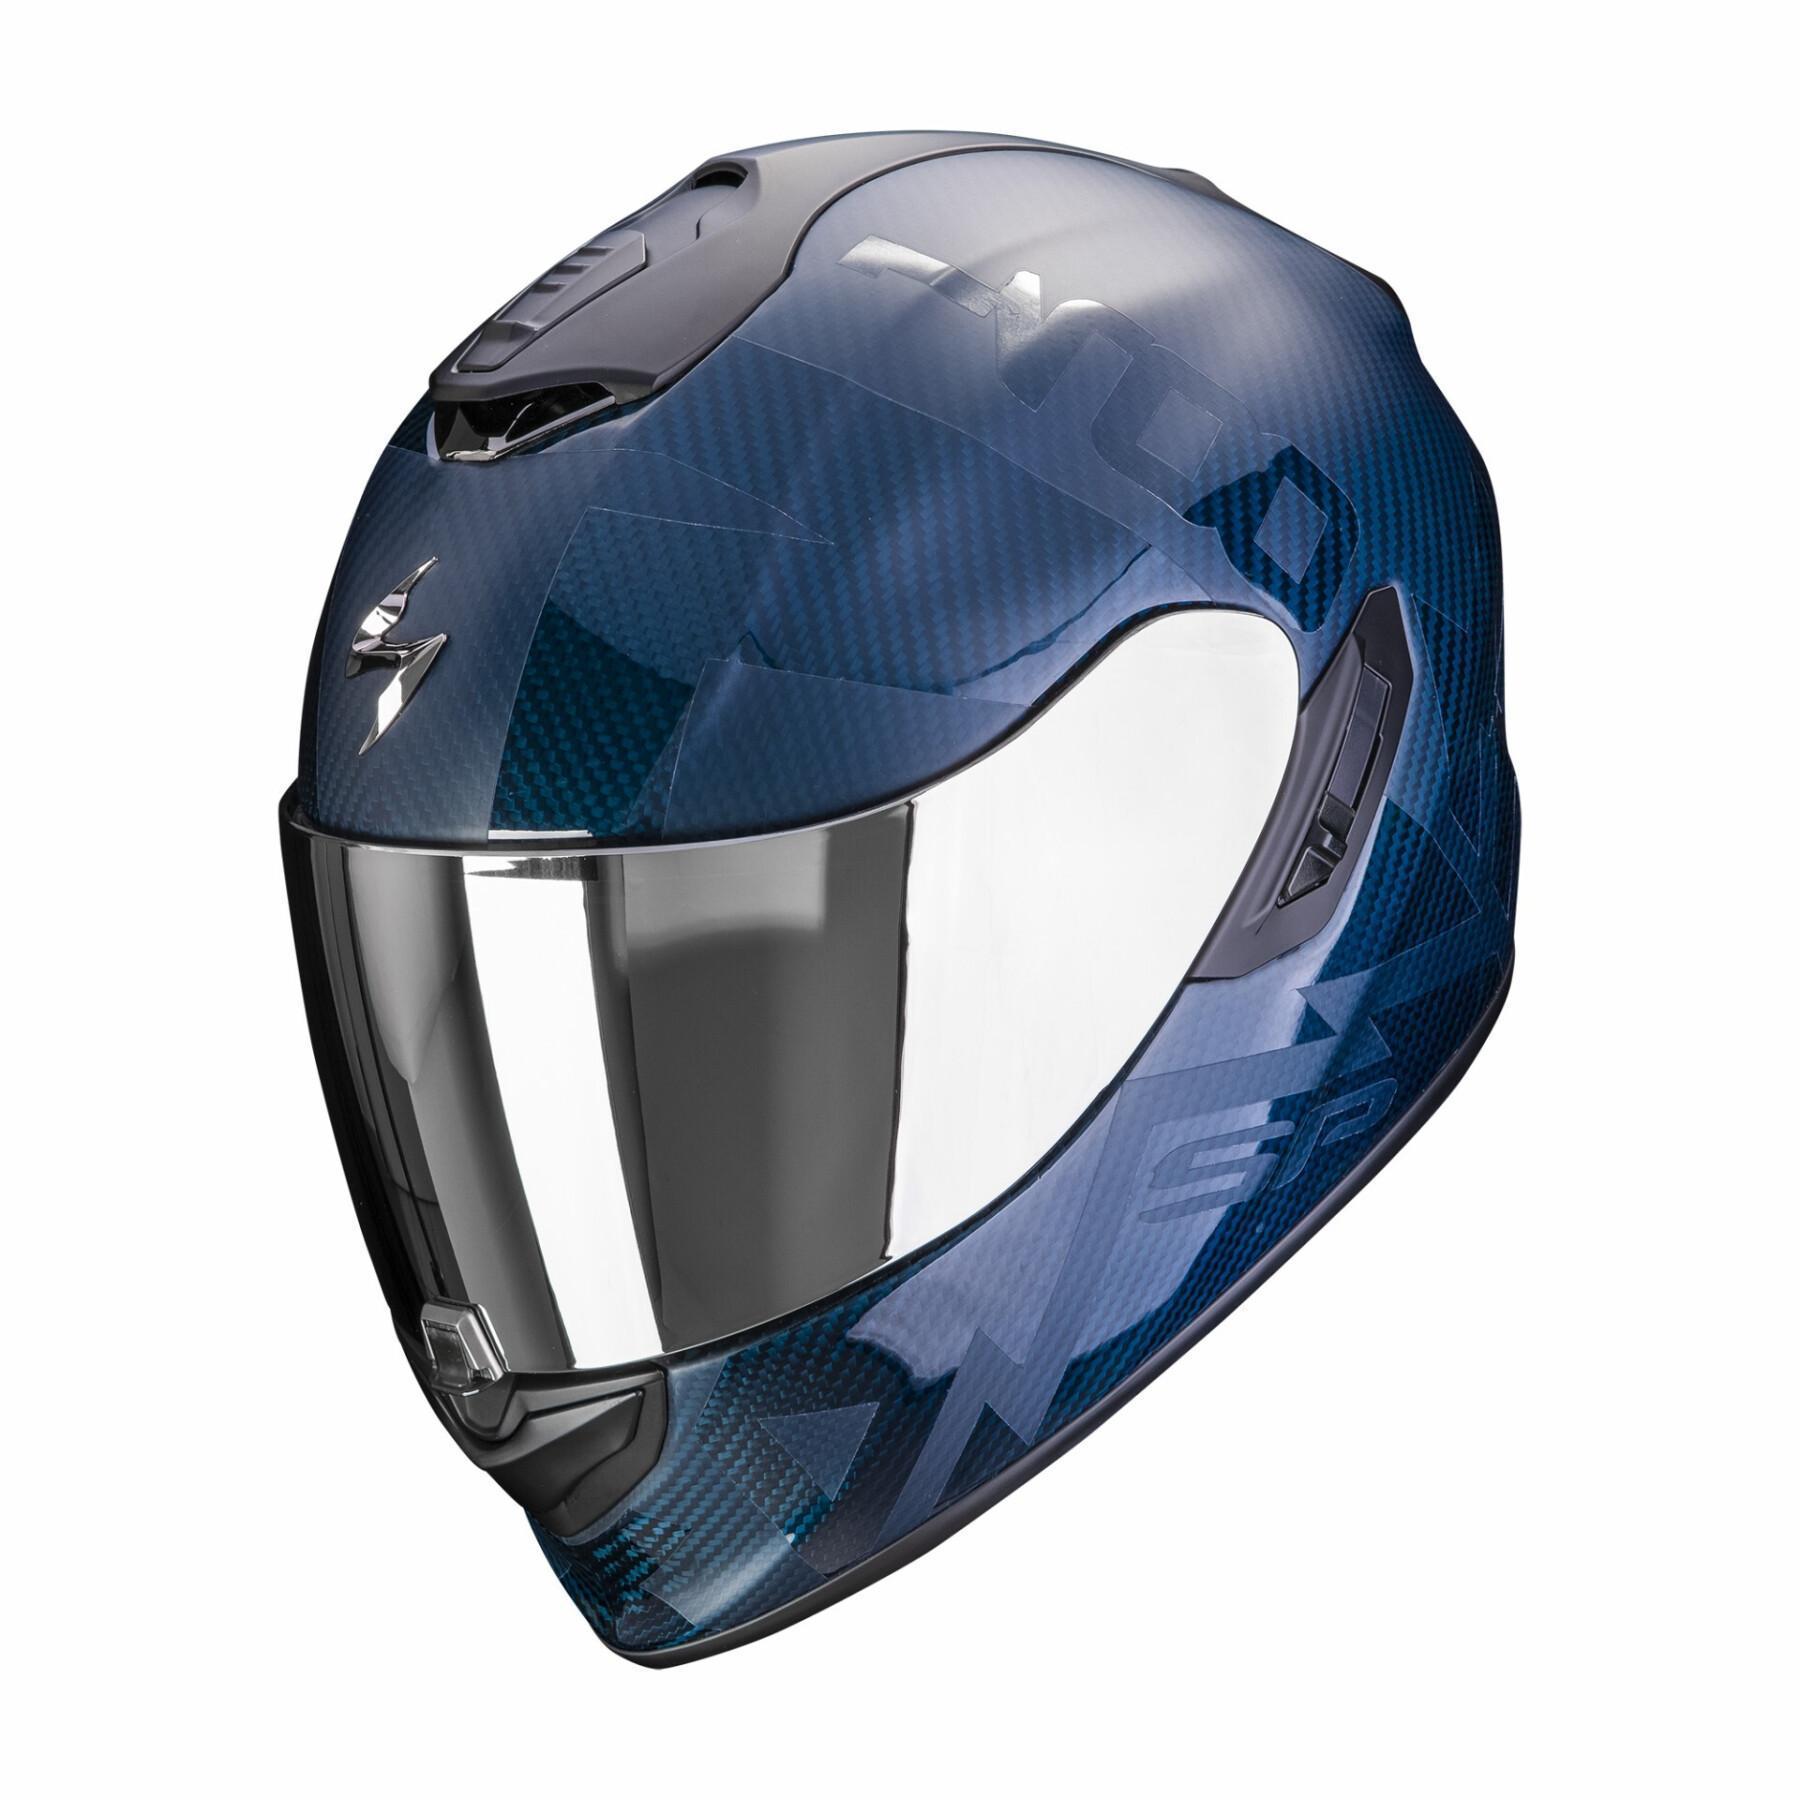 Motorrad-Integralhelm Scorpion Exo-1400 Evo Carbon Air Cerebro ECE 22-06